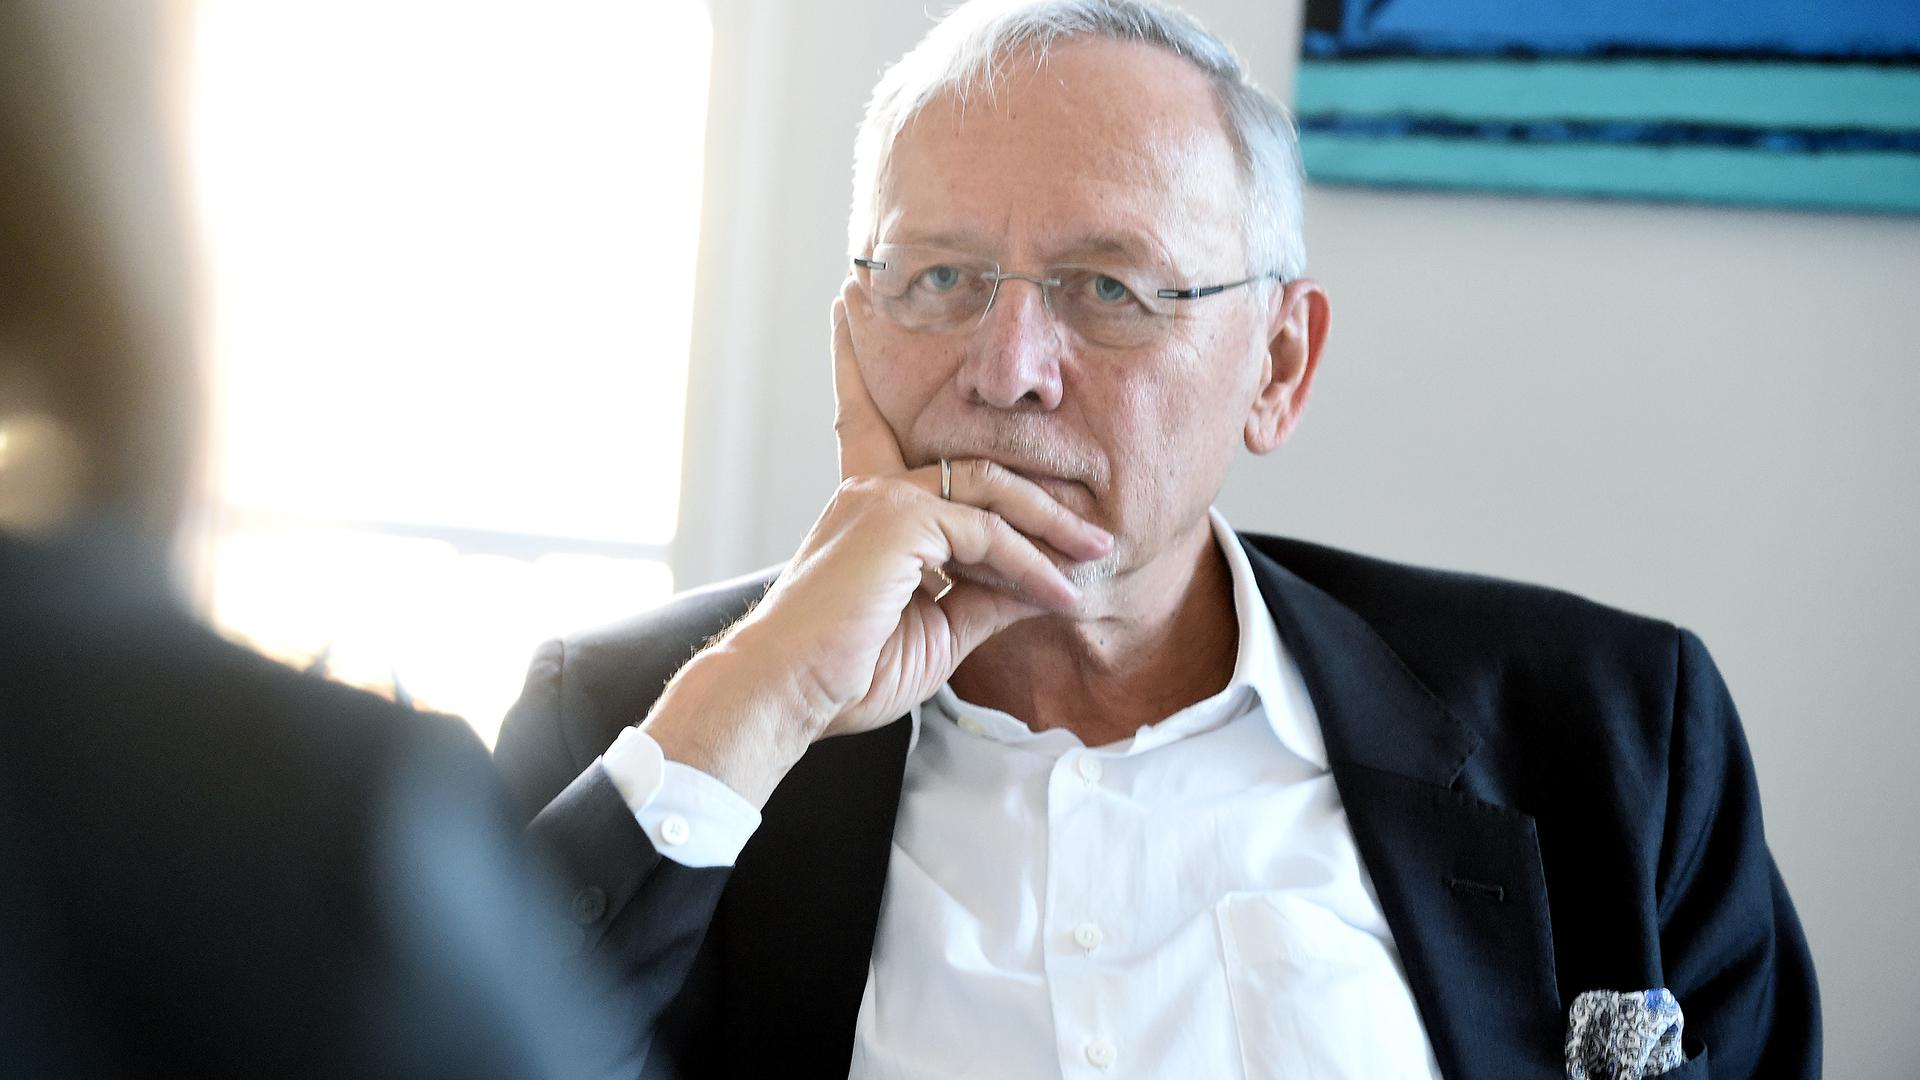 23.11.2021 Wolfgang Grenke in seinem Baden-Badener Büro. Grenke wurde als Präsident der IHK Karlsruhe wiedergewählt.